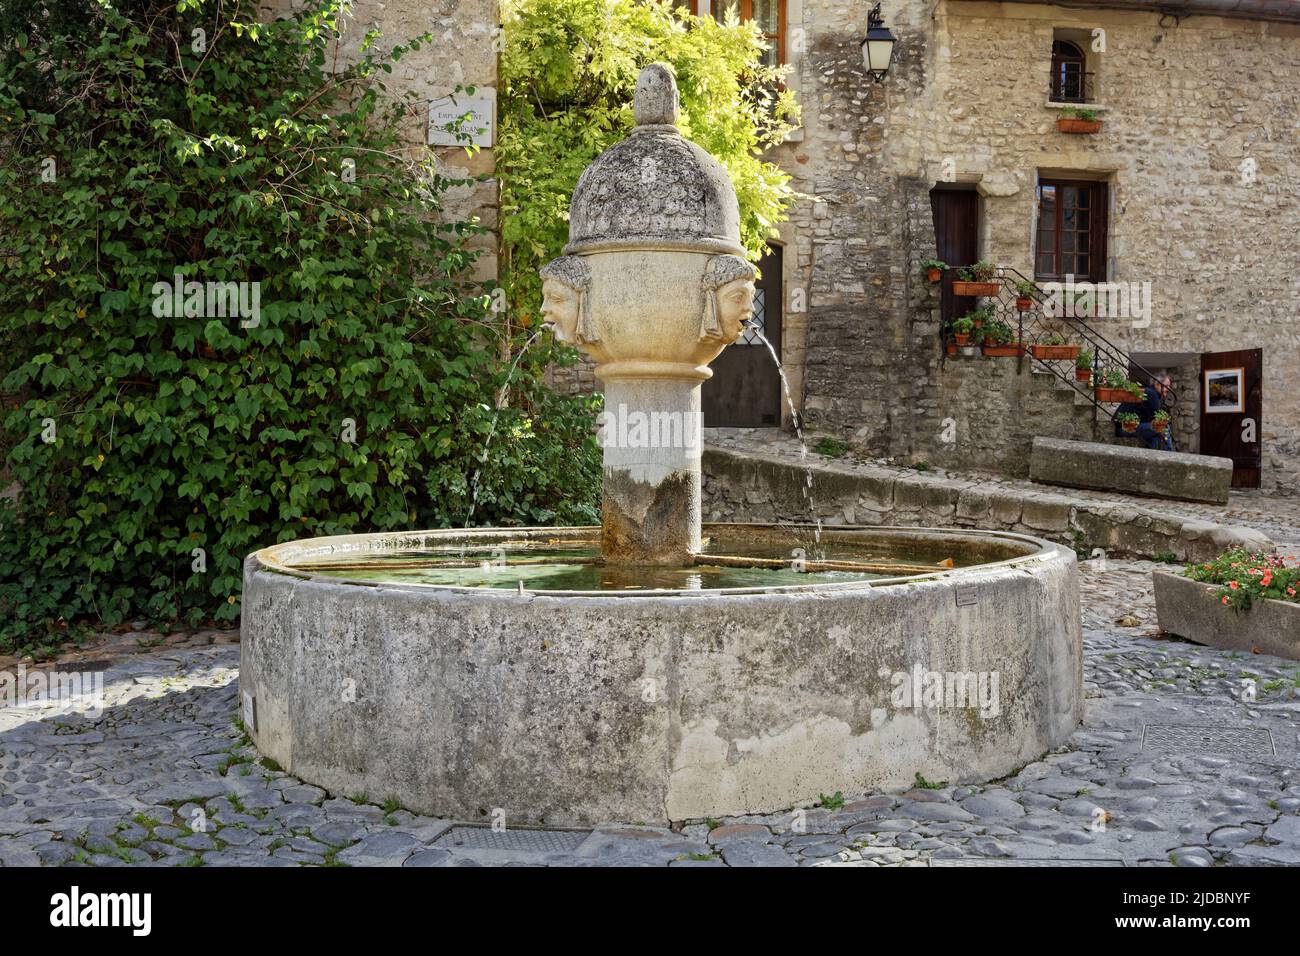 France, Vaison-la-Romaine ville médiévale de Vaison, rues pittoresques et fontaines Banque D'Images